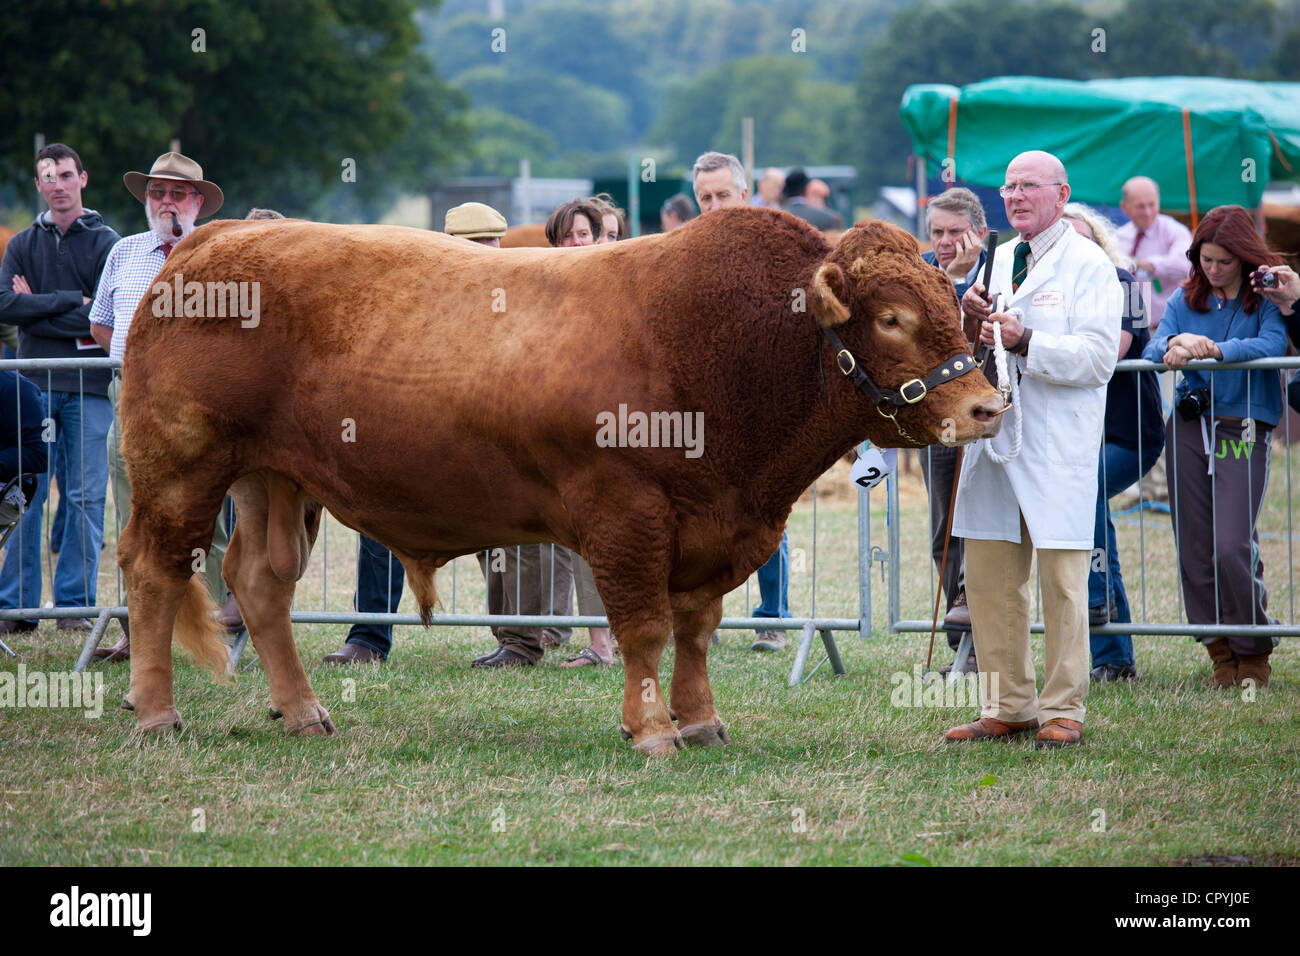 South Devon Bull auf Moreton, landwirtschaftliche Veranstaltung in Moreton in Marsh Showground, Cotswolds, Gloucestershire, Großbritannien Stockfoto